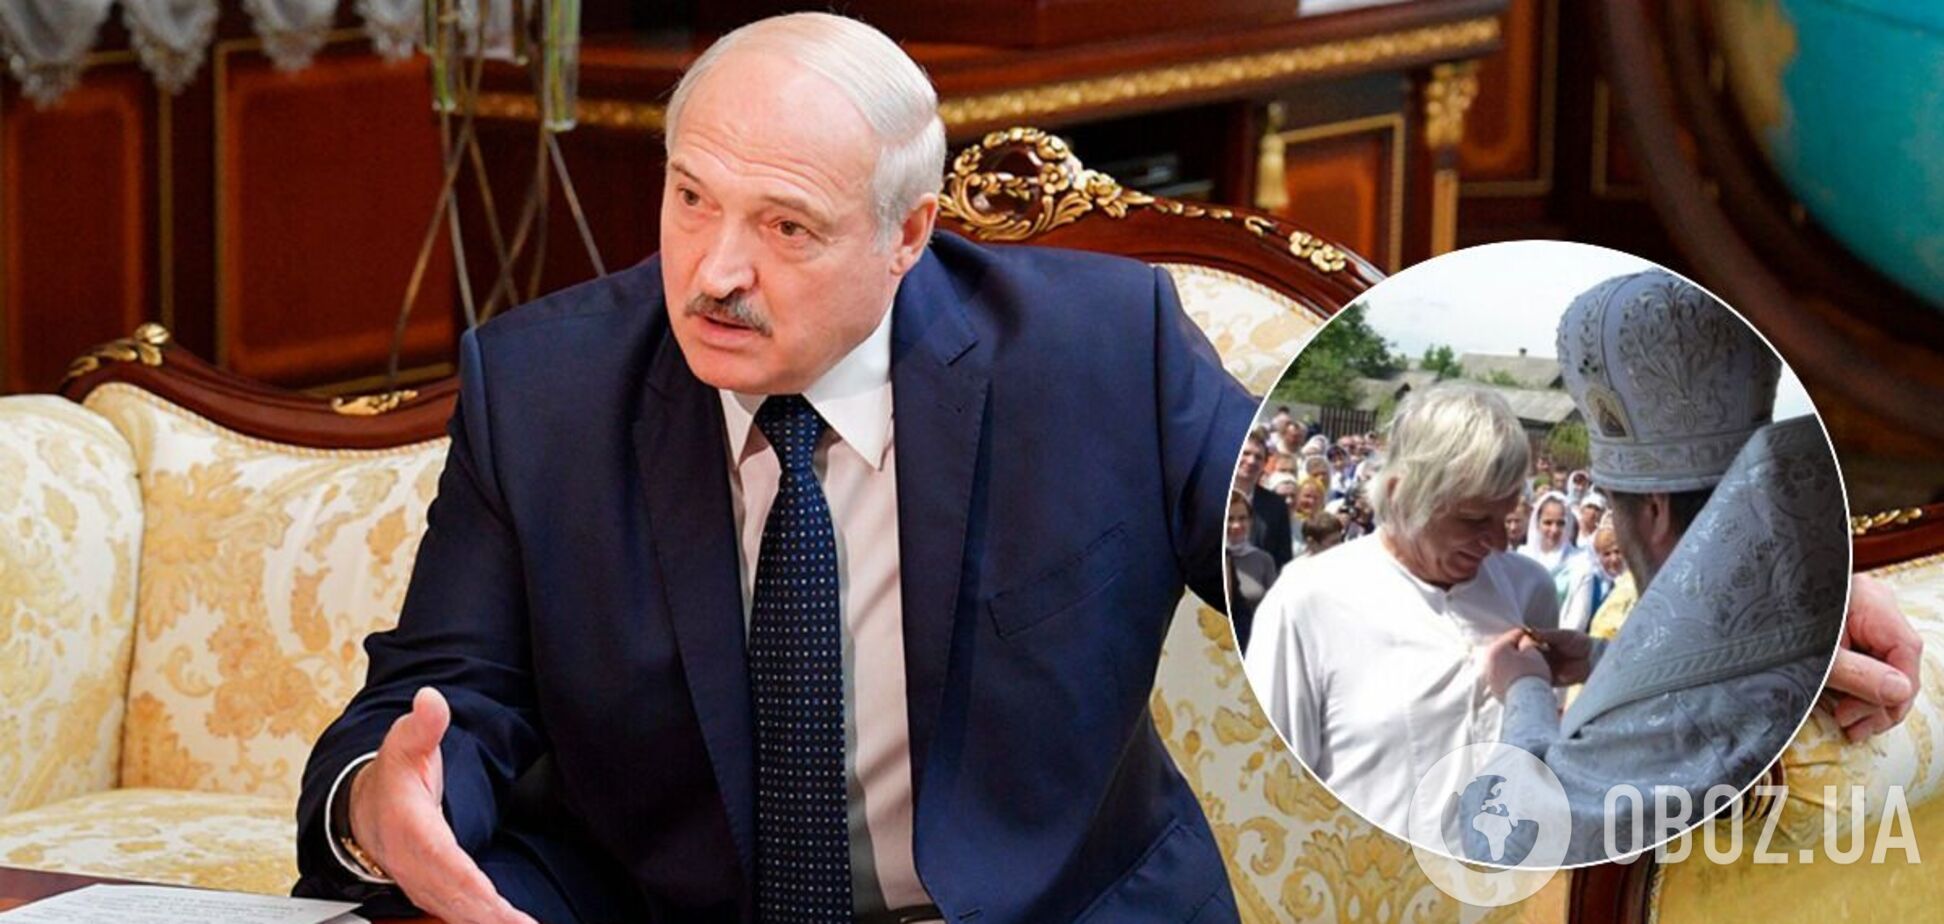 У 'кошелька' Лукашенко нашли элитную недвижимость в Лондоне